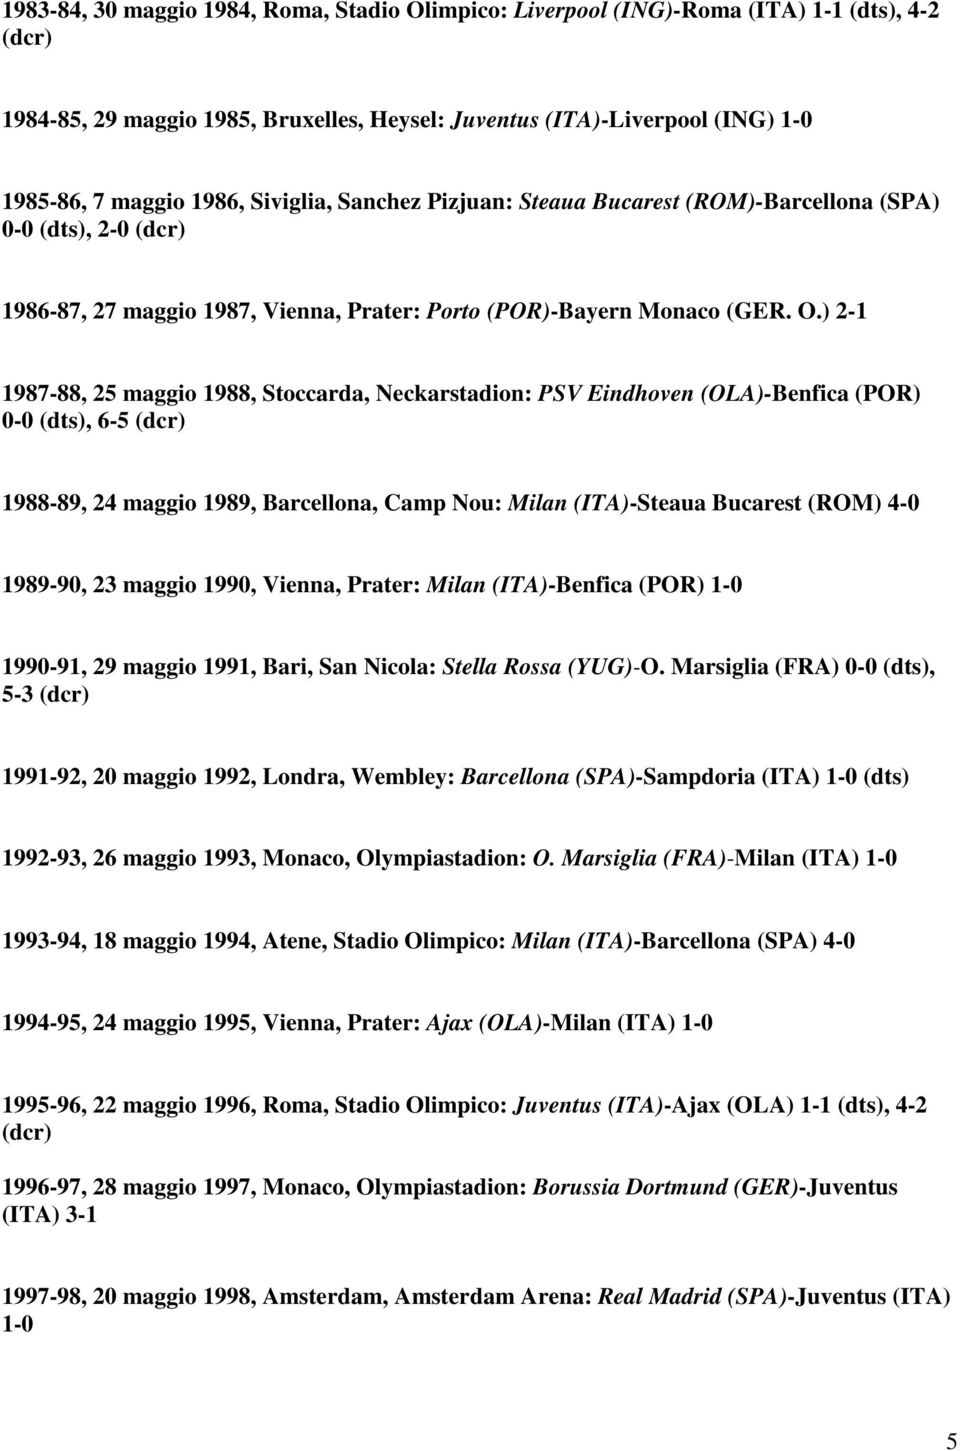 2-1 1987-88, 25 maggio 1988, Stoccarda, Neckarstadion: PSV Eindhoven OLA-Benfica POR 0-0 dts, 6-5 dcr 1988-89, 24 maggio 1989, Barcellona, Camp Nou: Milan ITA-Steaua Bucarest ROM 4-0 1989-90, 23